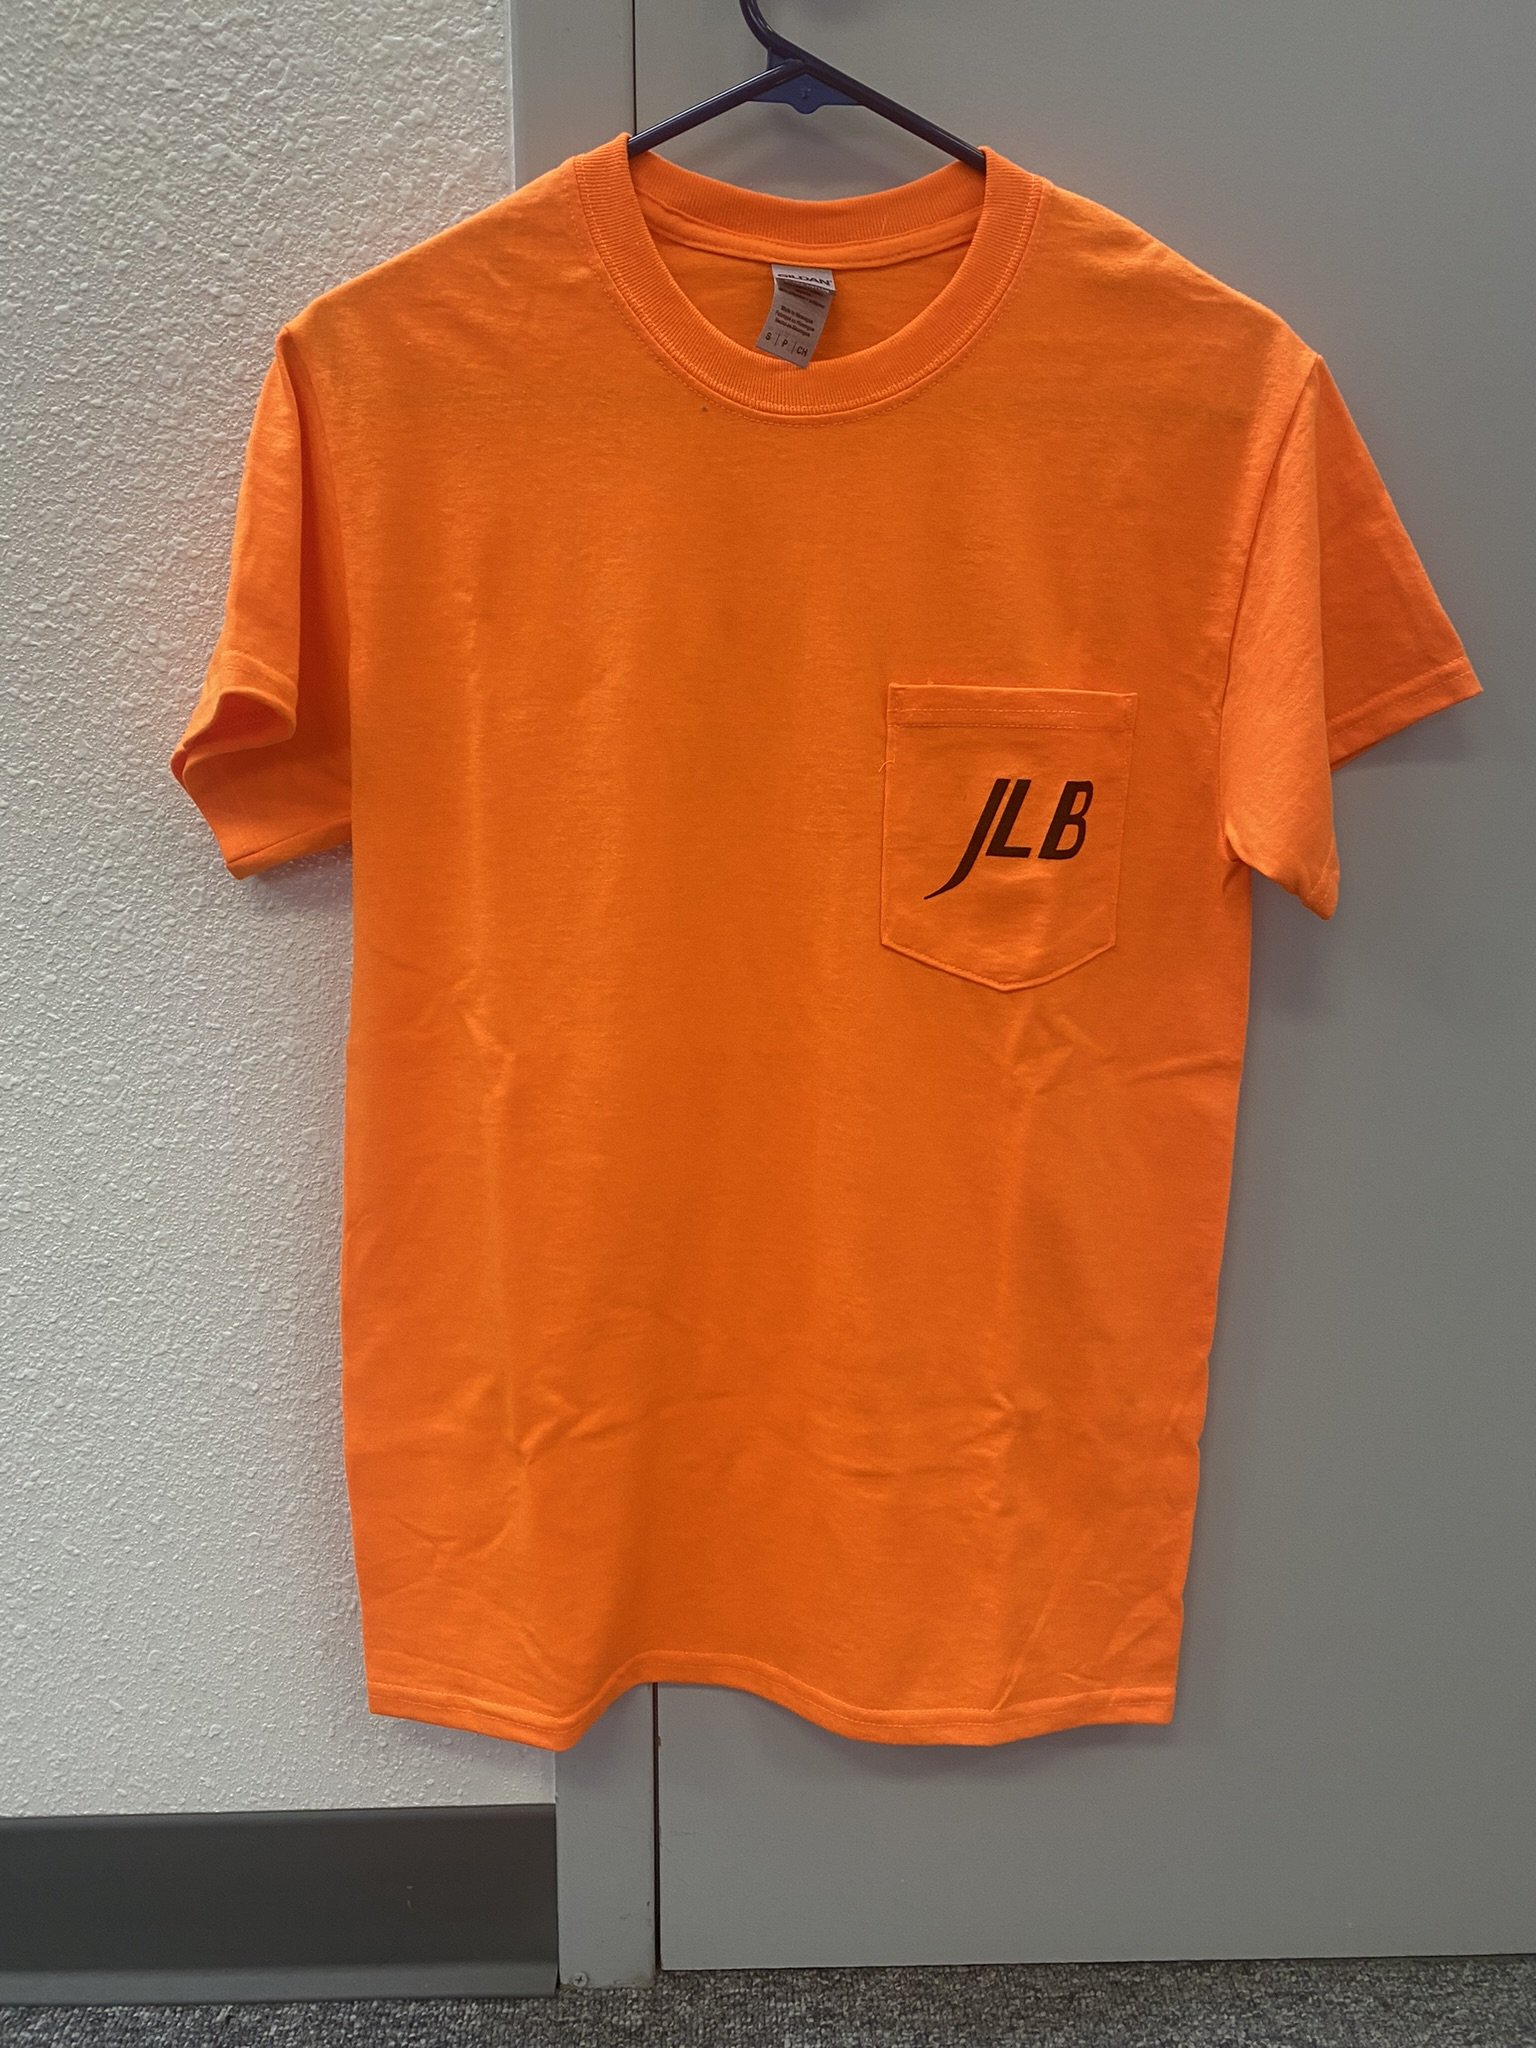 Merchandise — JLB